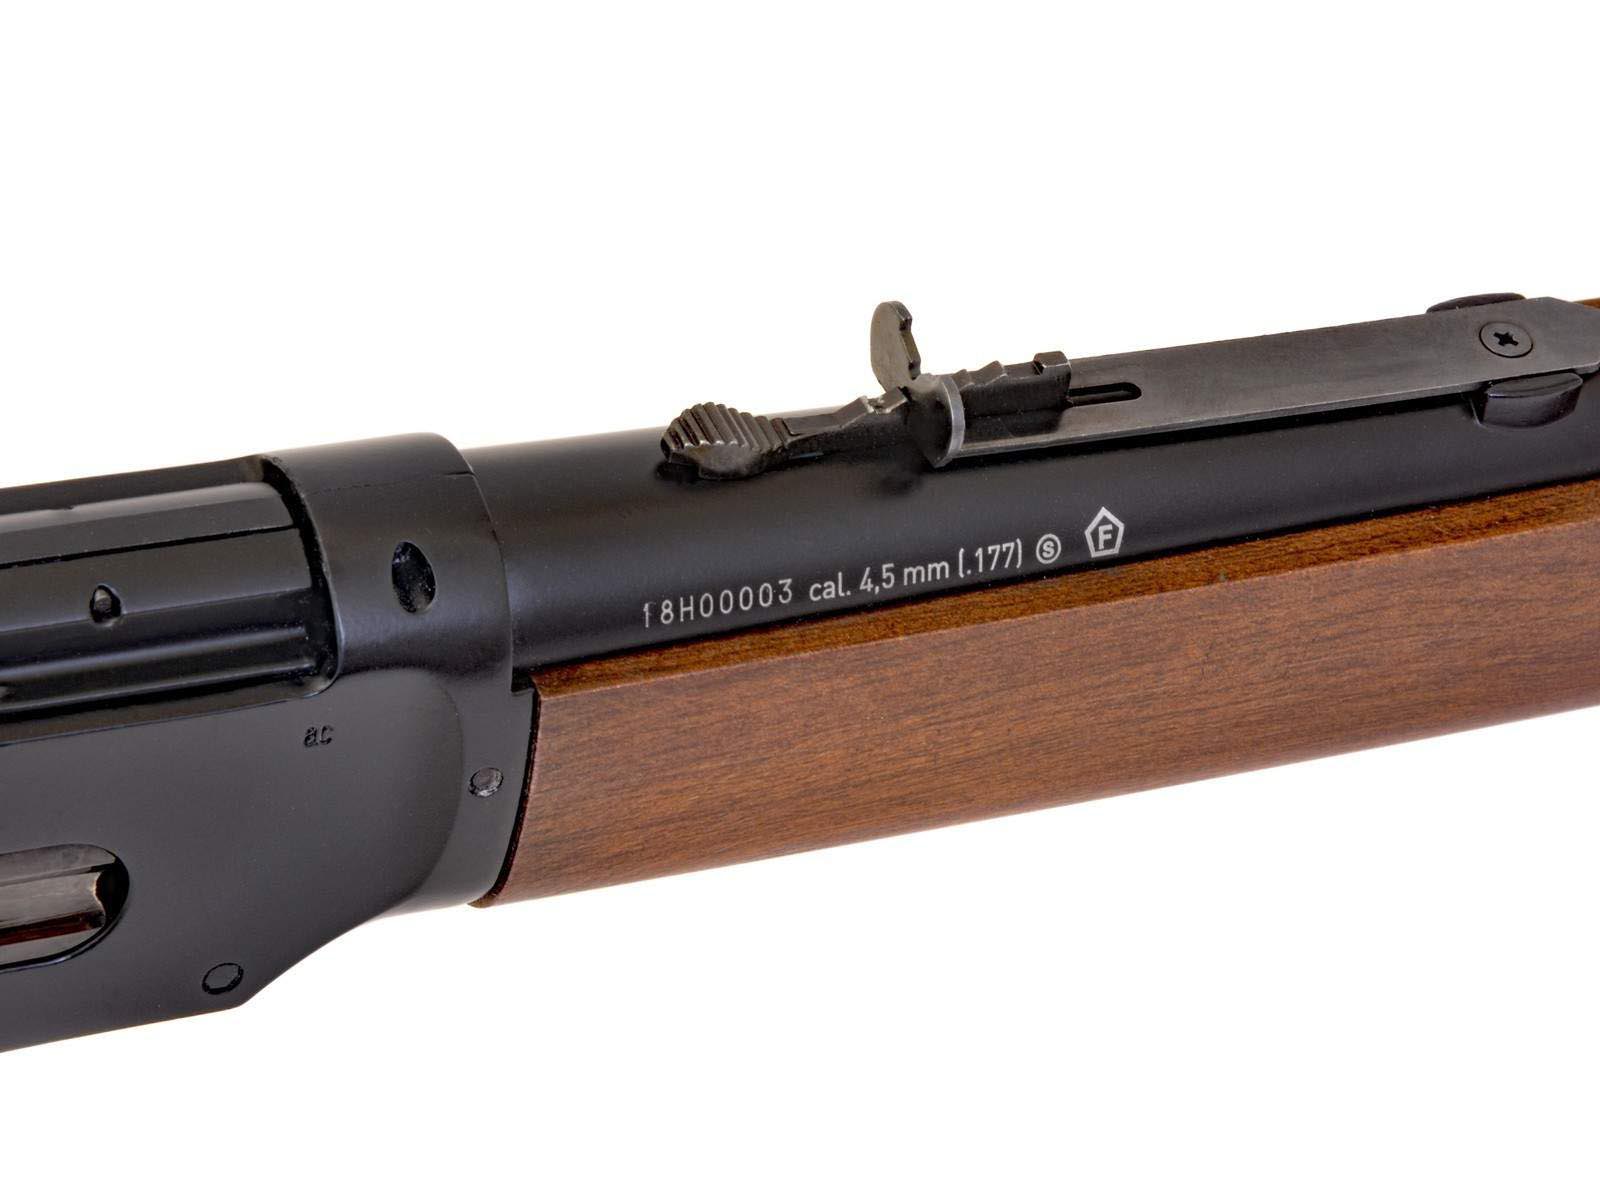 Umarex .177 BB Legends Cowboy Air Rifle - 2251817